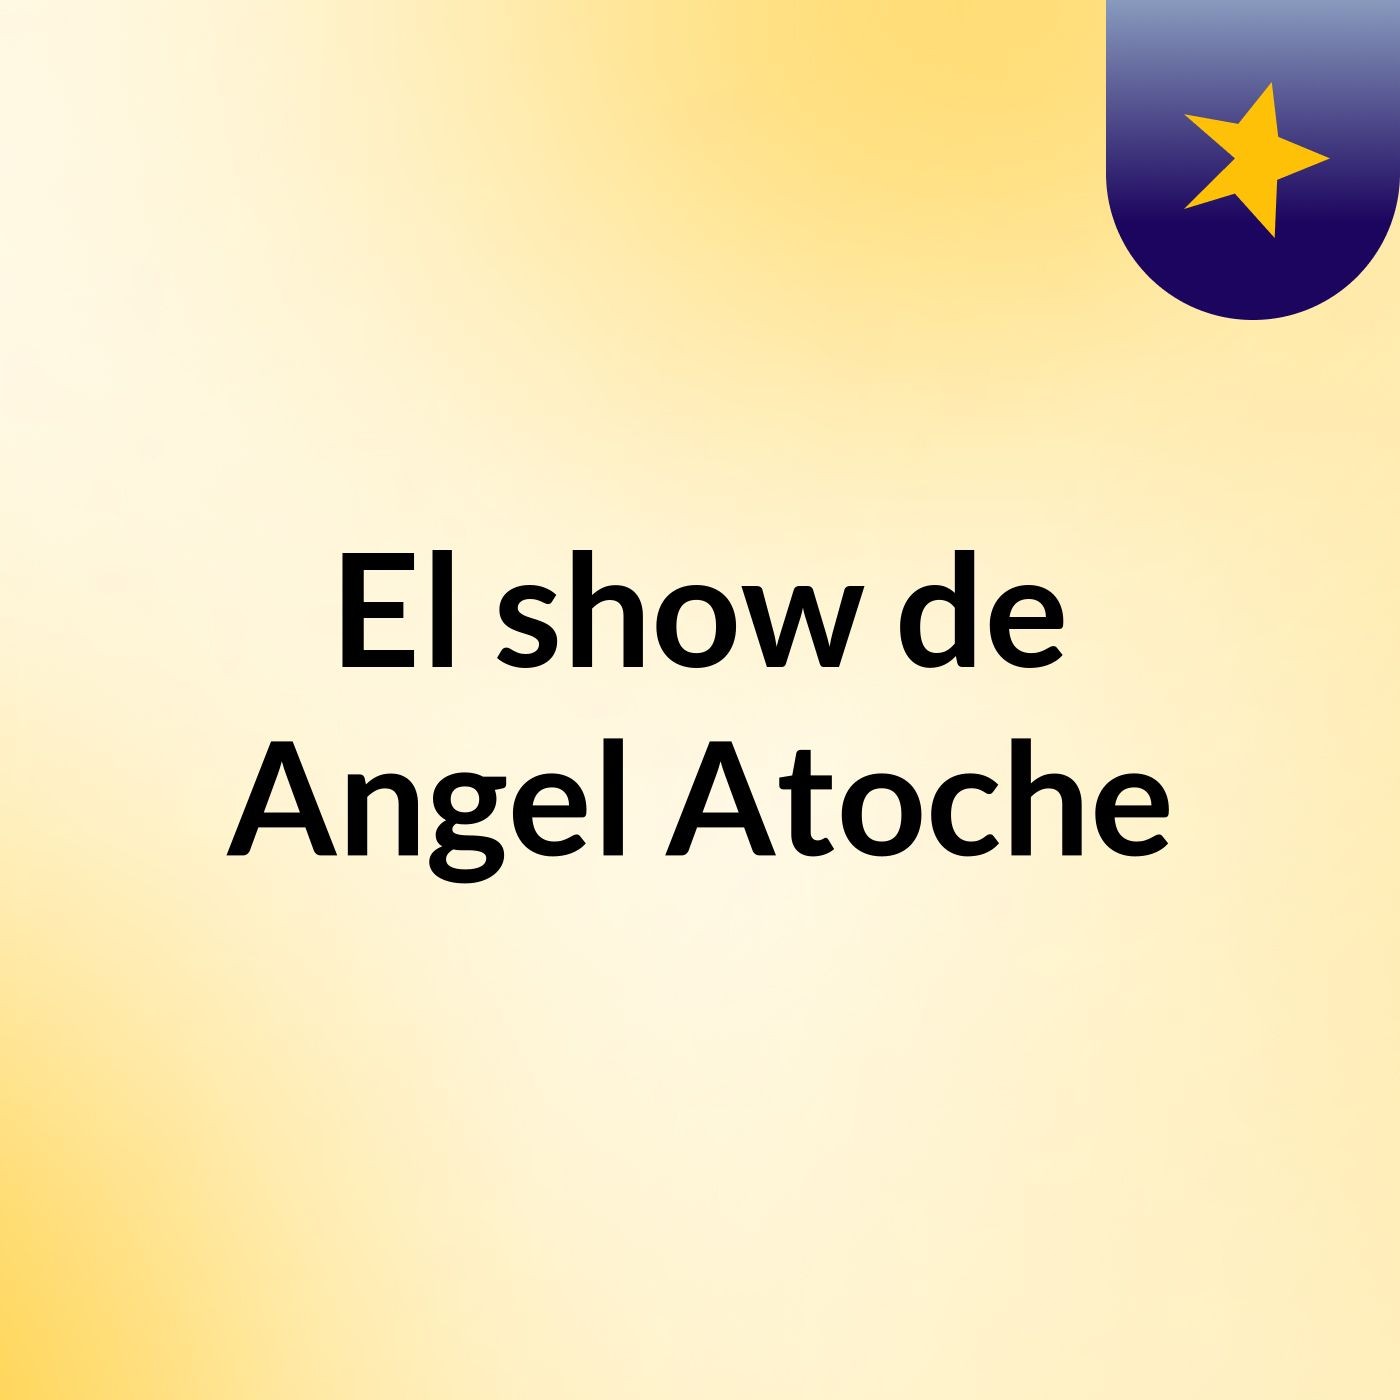 El show de Angel Atoche